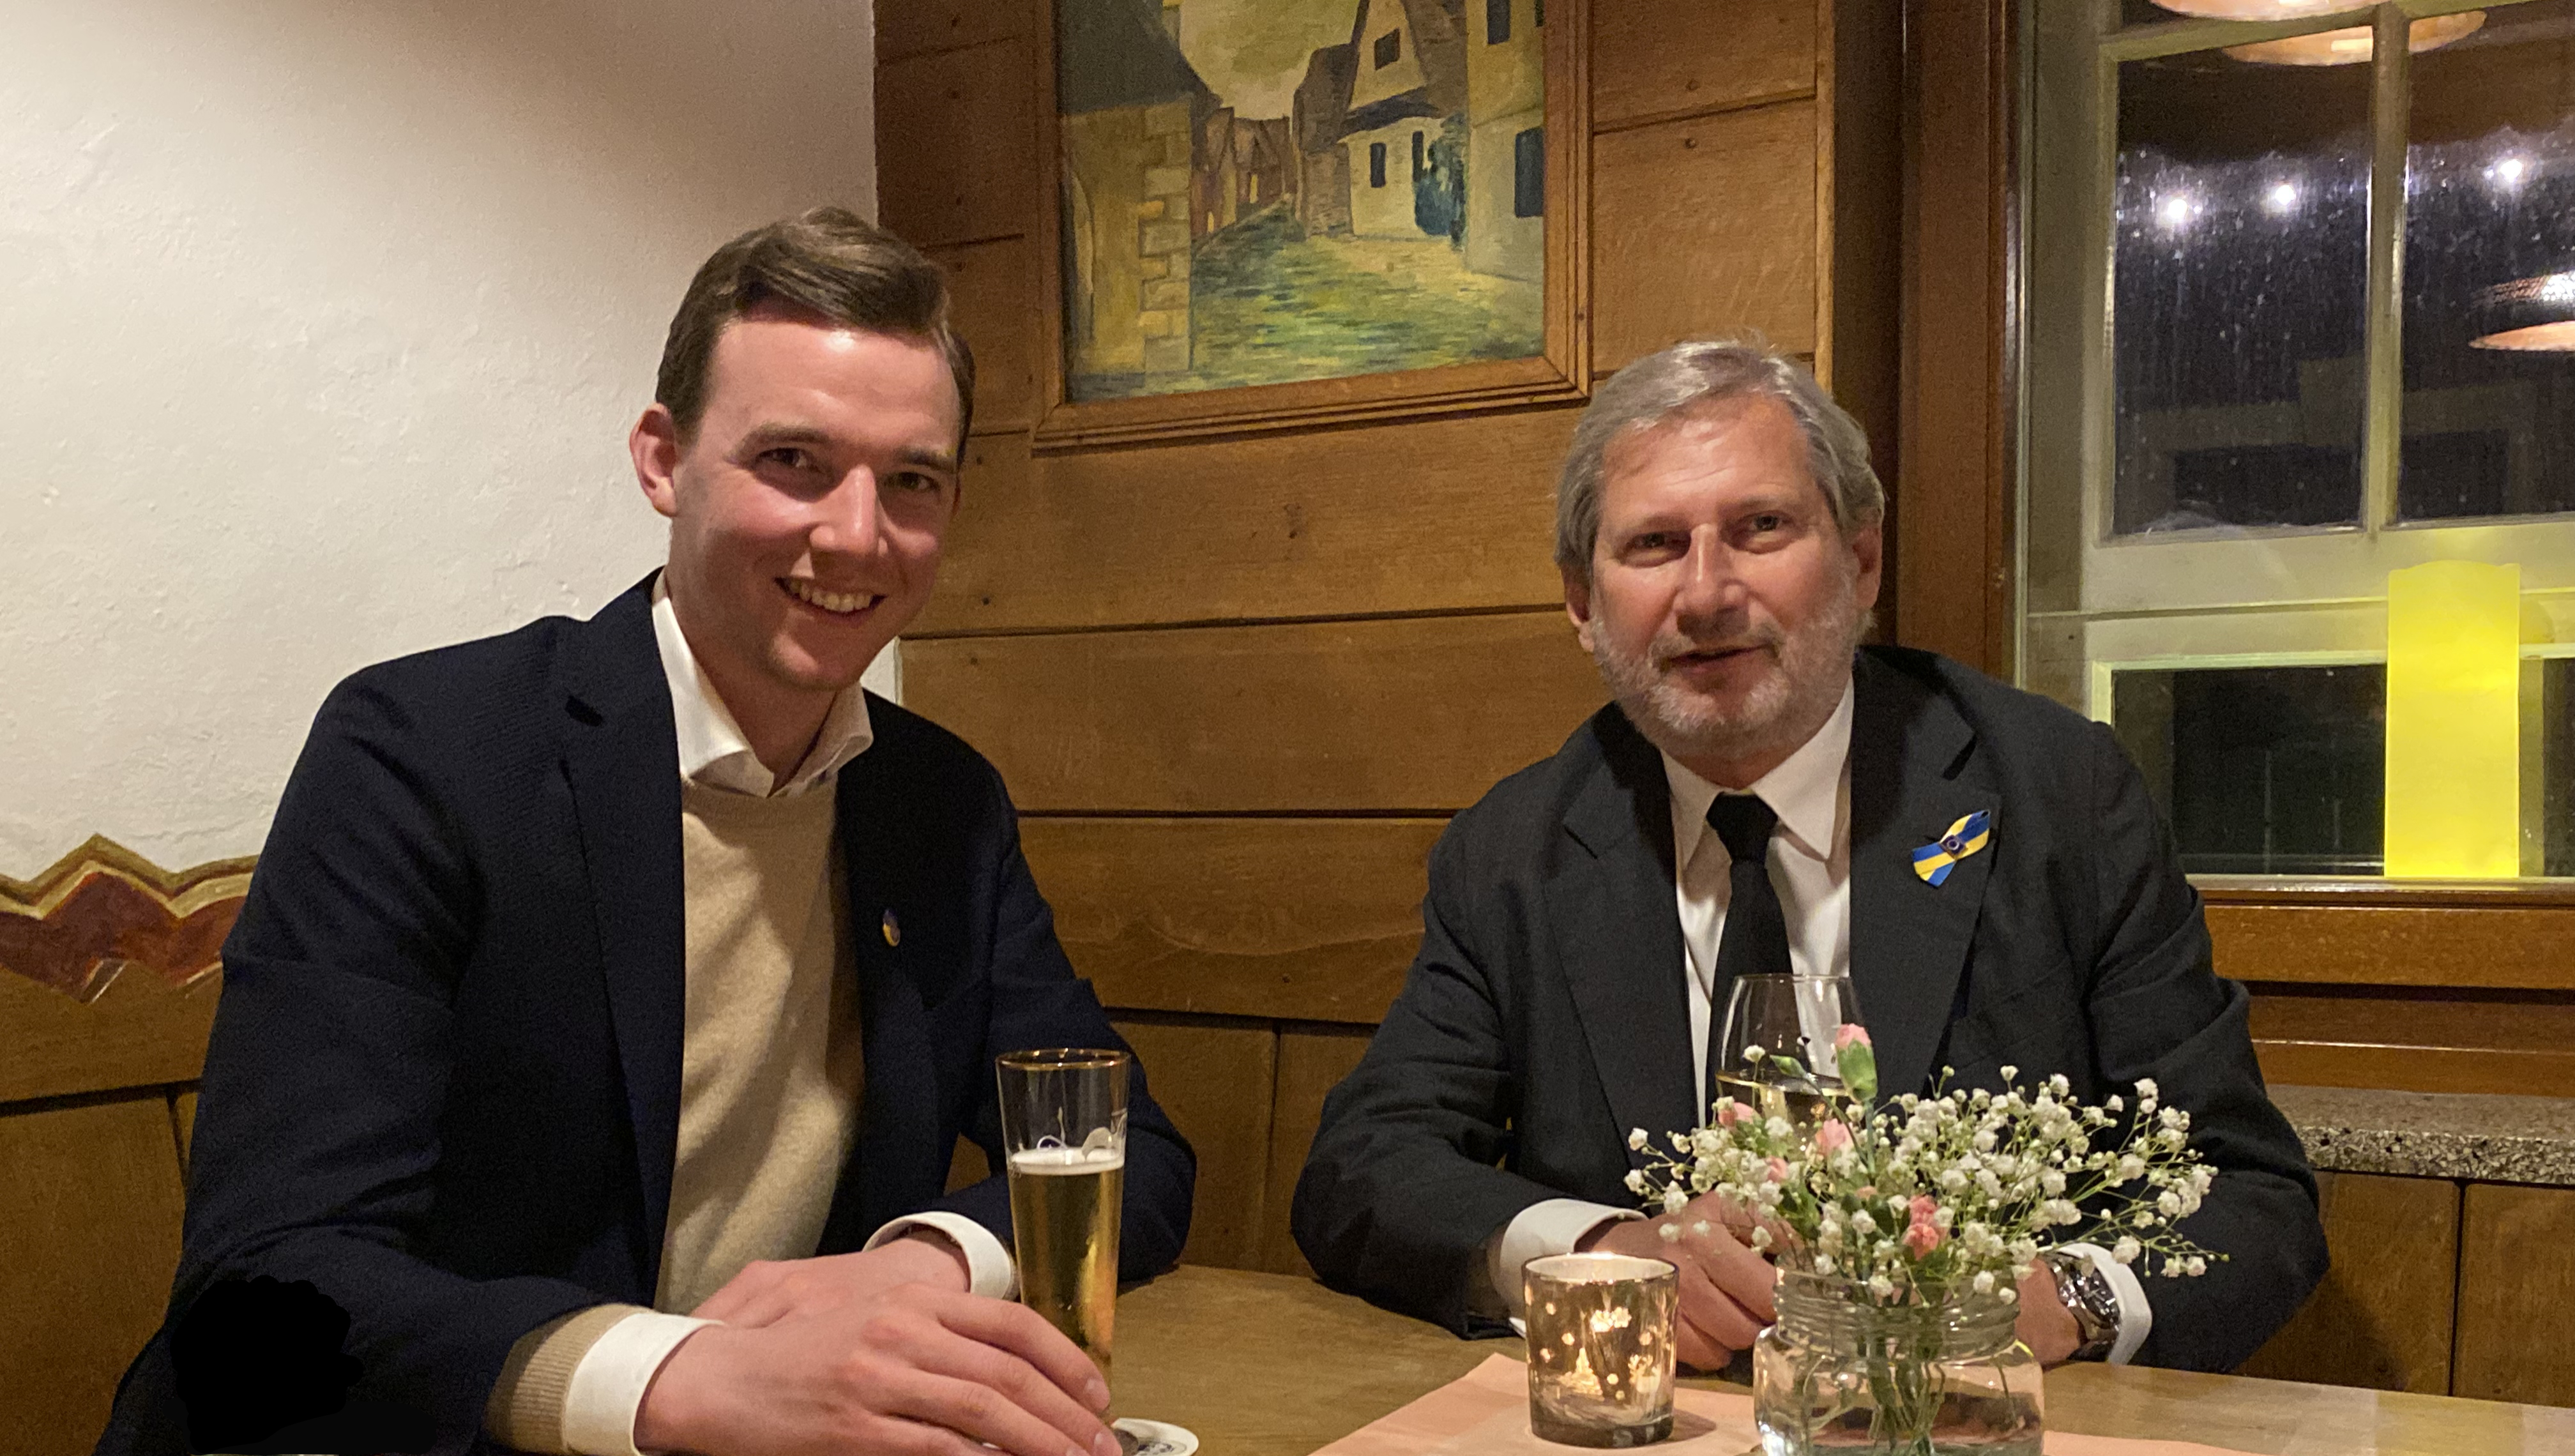 Freuten sich über den gemeinsamen Austausch in Münster: CDU-Landtagskandidat Dr. Julian Allendorf (l.) und EU-Kommissar Johannes Hahn